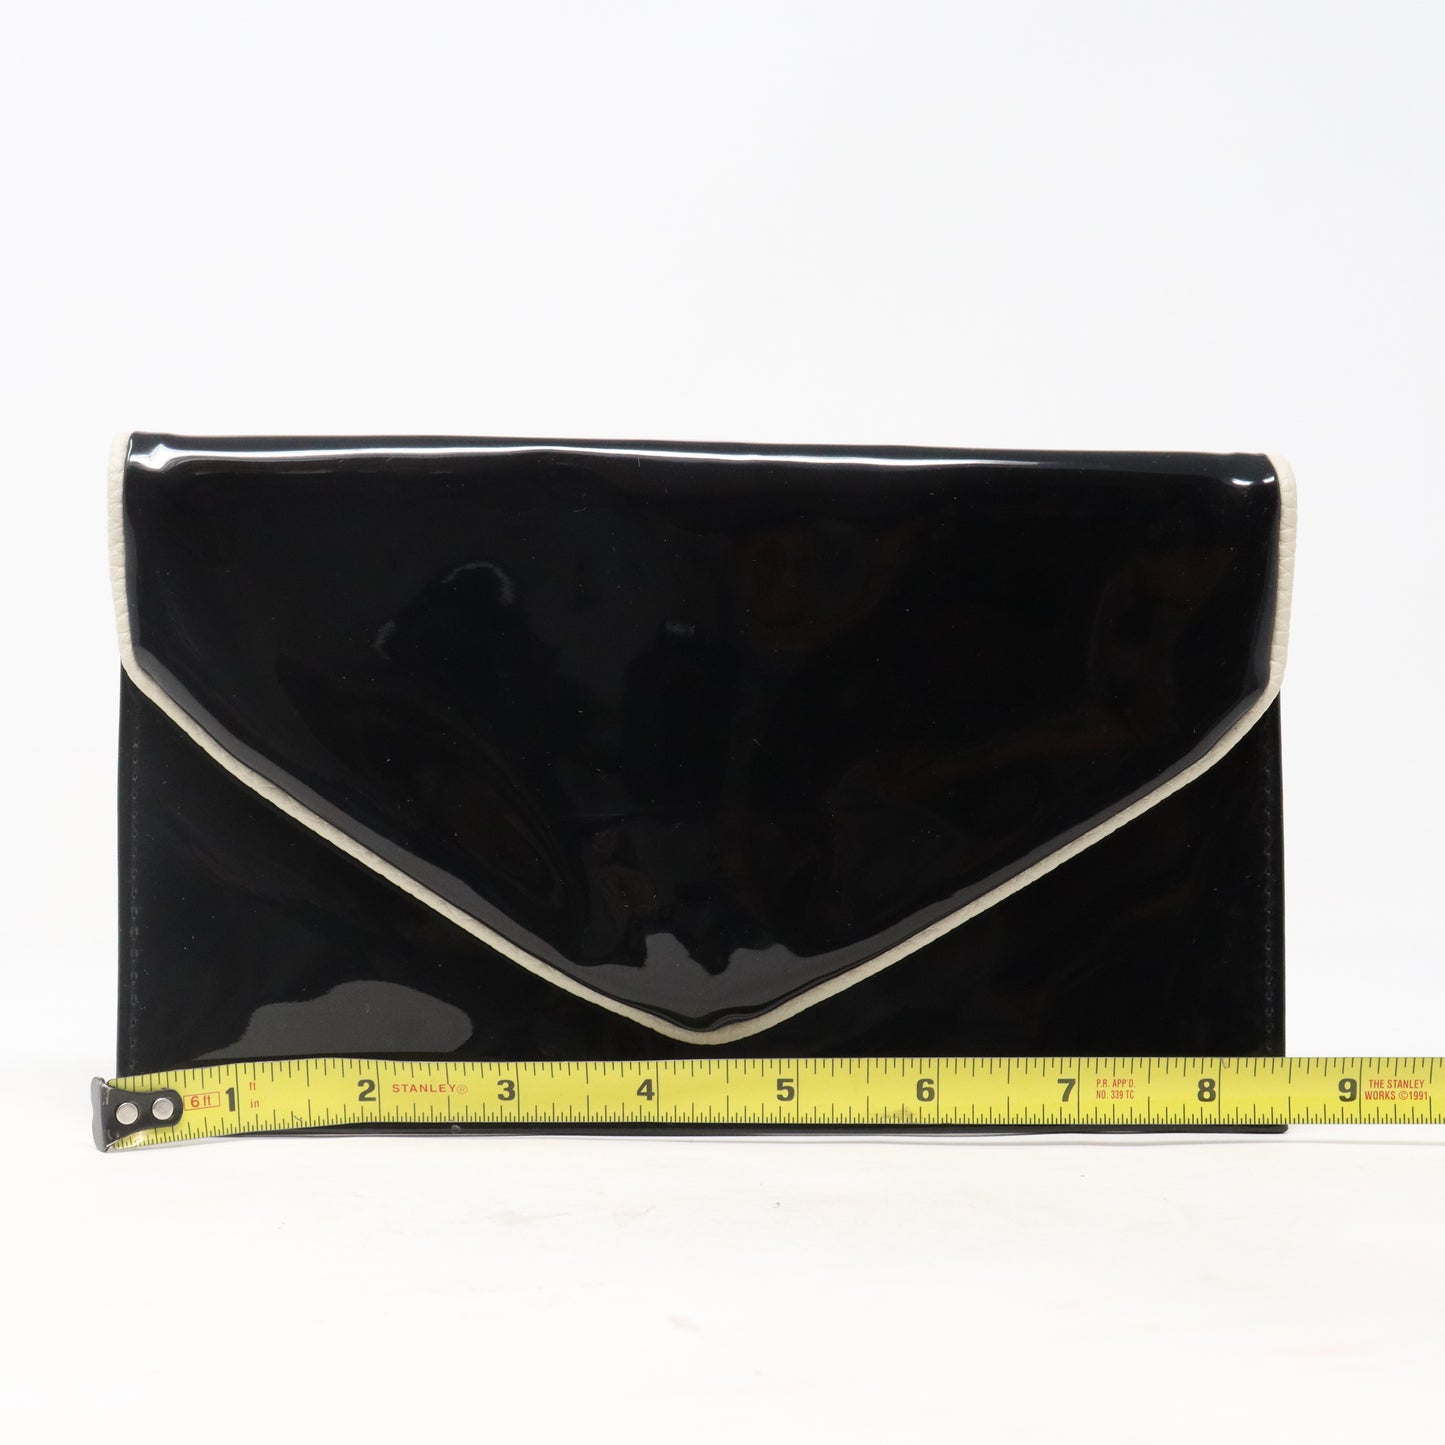 Estee Lauder Black And Cream Cosmetic Bag  / New